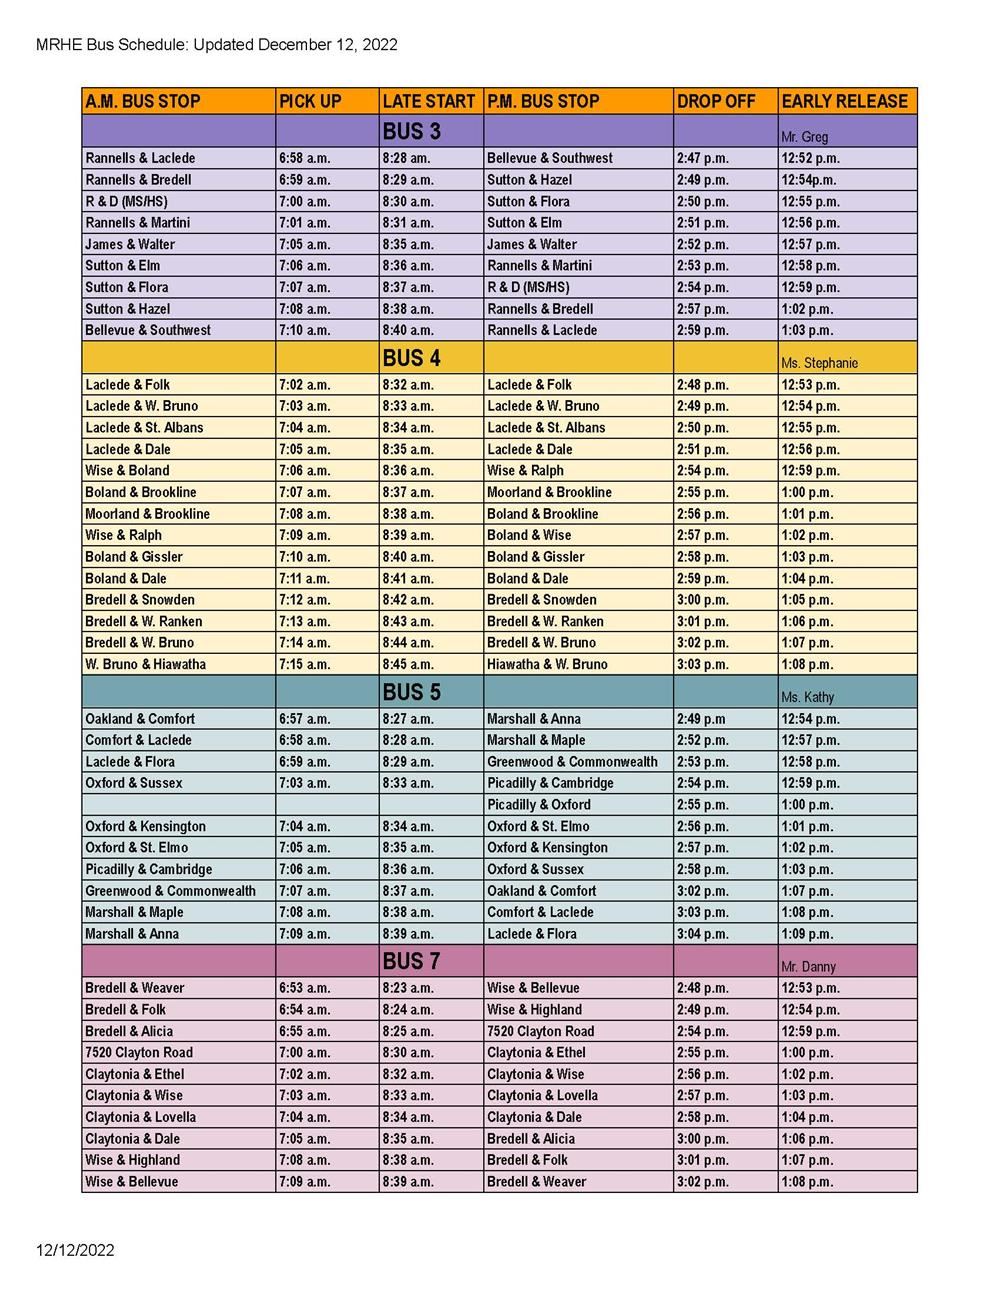 MRHE Bus Schedules